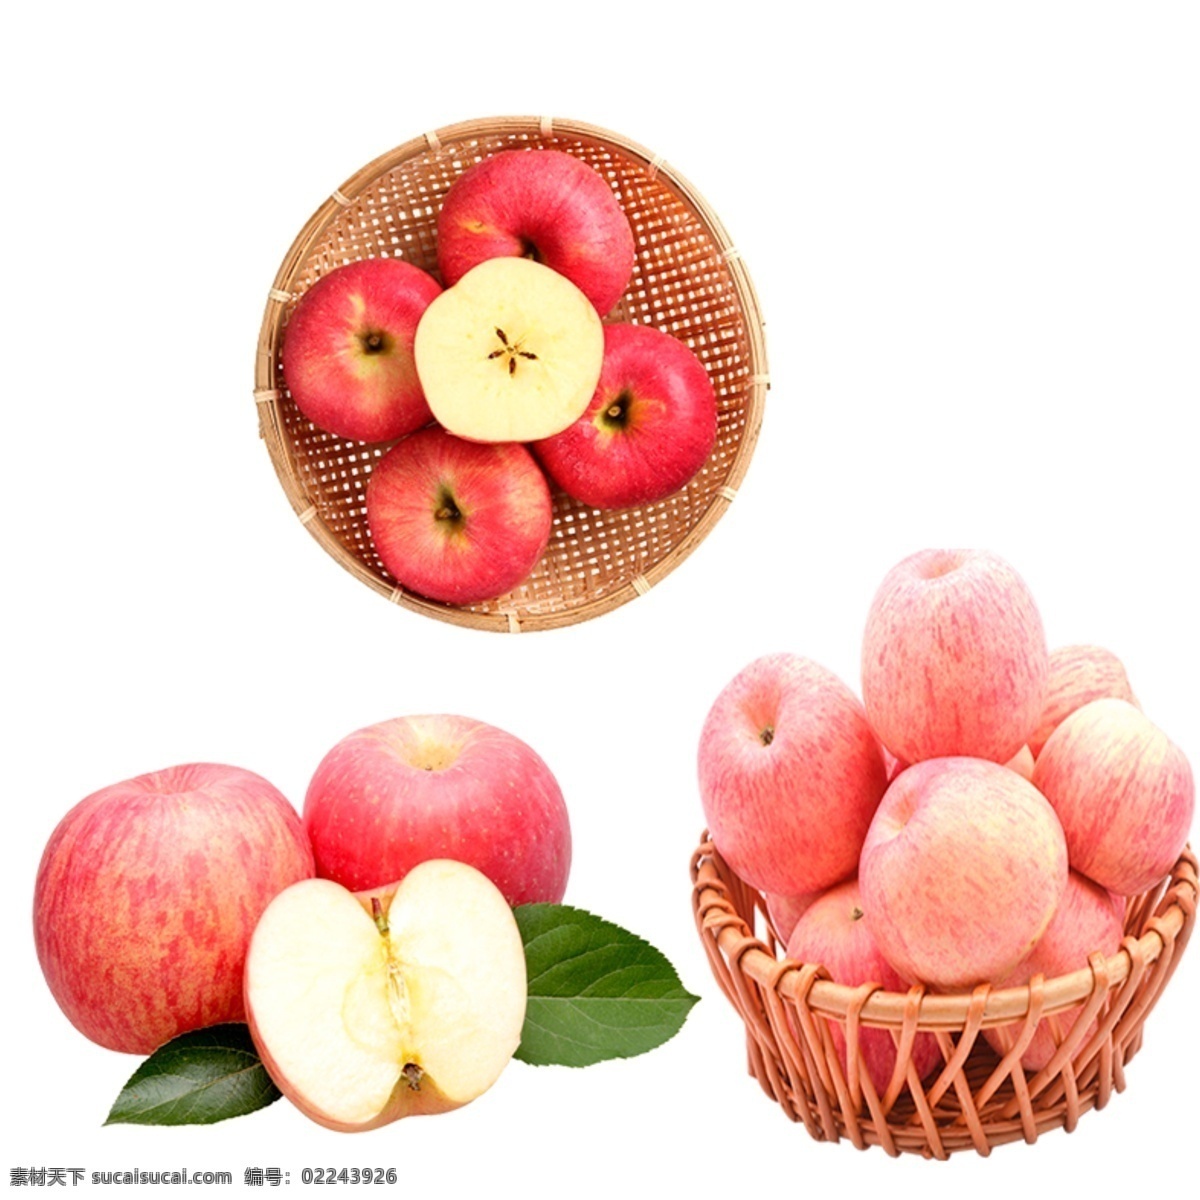 苹果图片 苹果 红苹果 水果 苹果元素 苹果素材